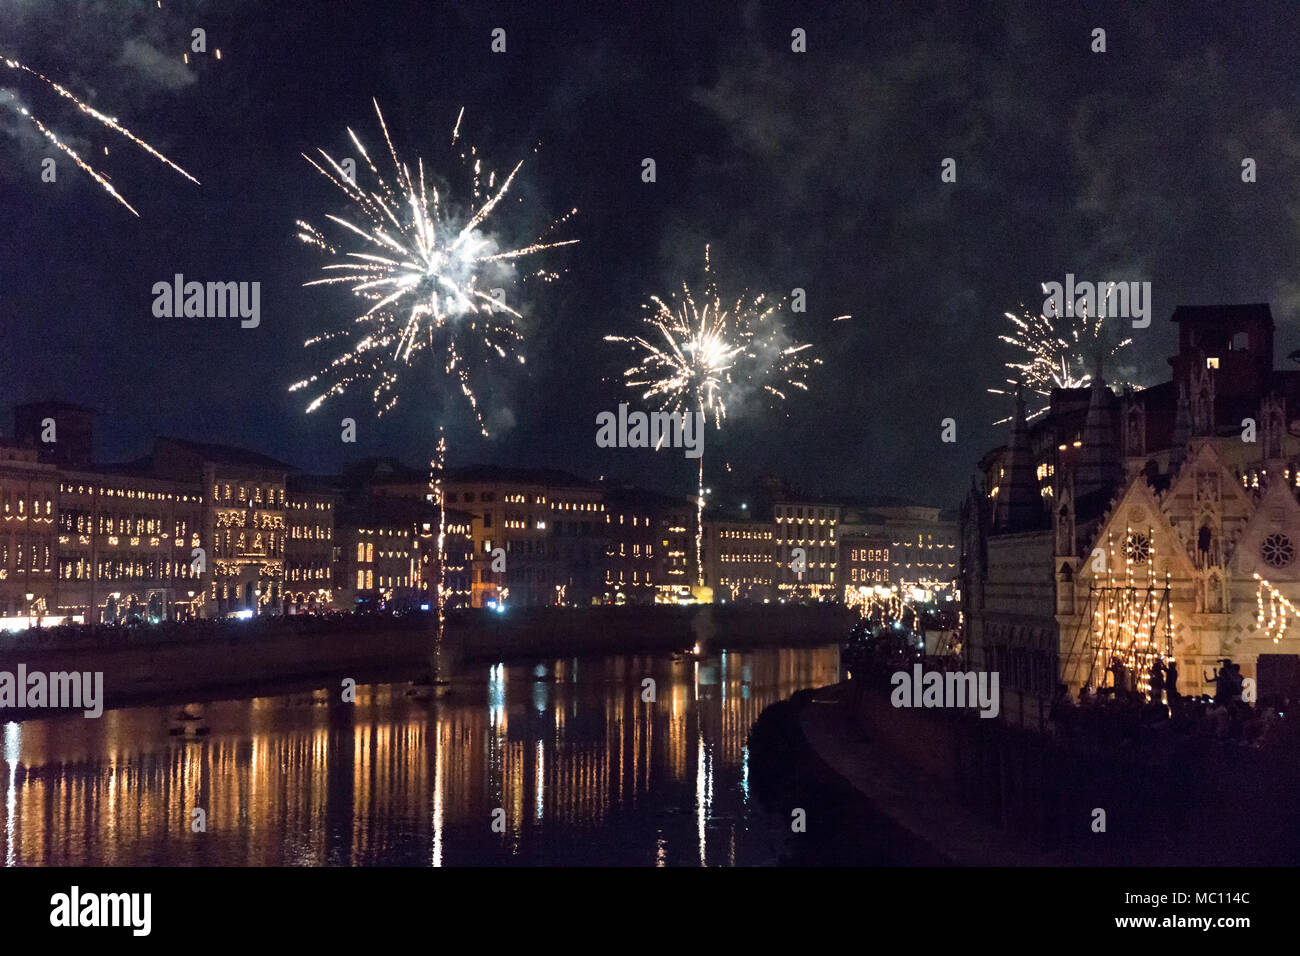 Des feux d'artifice illuminent le ciel au-dessus de la rivière Arno, l'honneur du saint San Ranieri dans le festival Luminaria annuelle tenue chaque année le 16 juin Banque D'Images